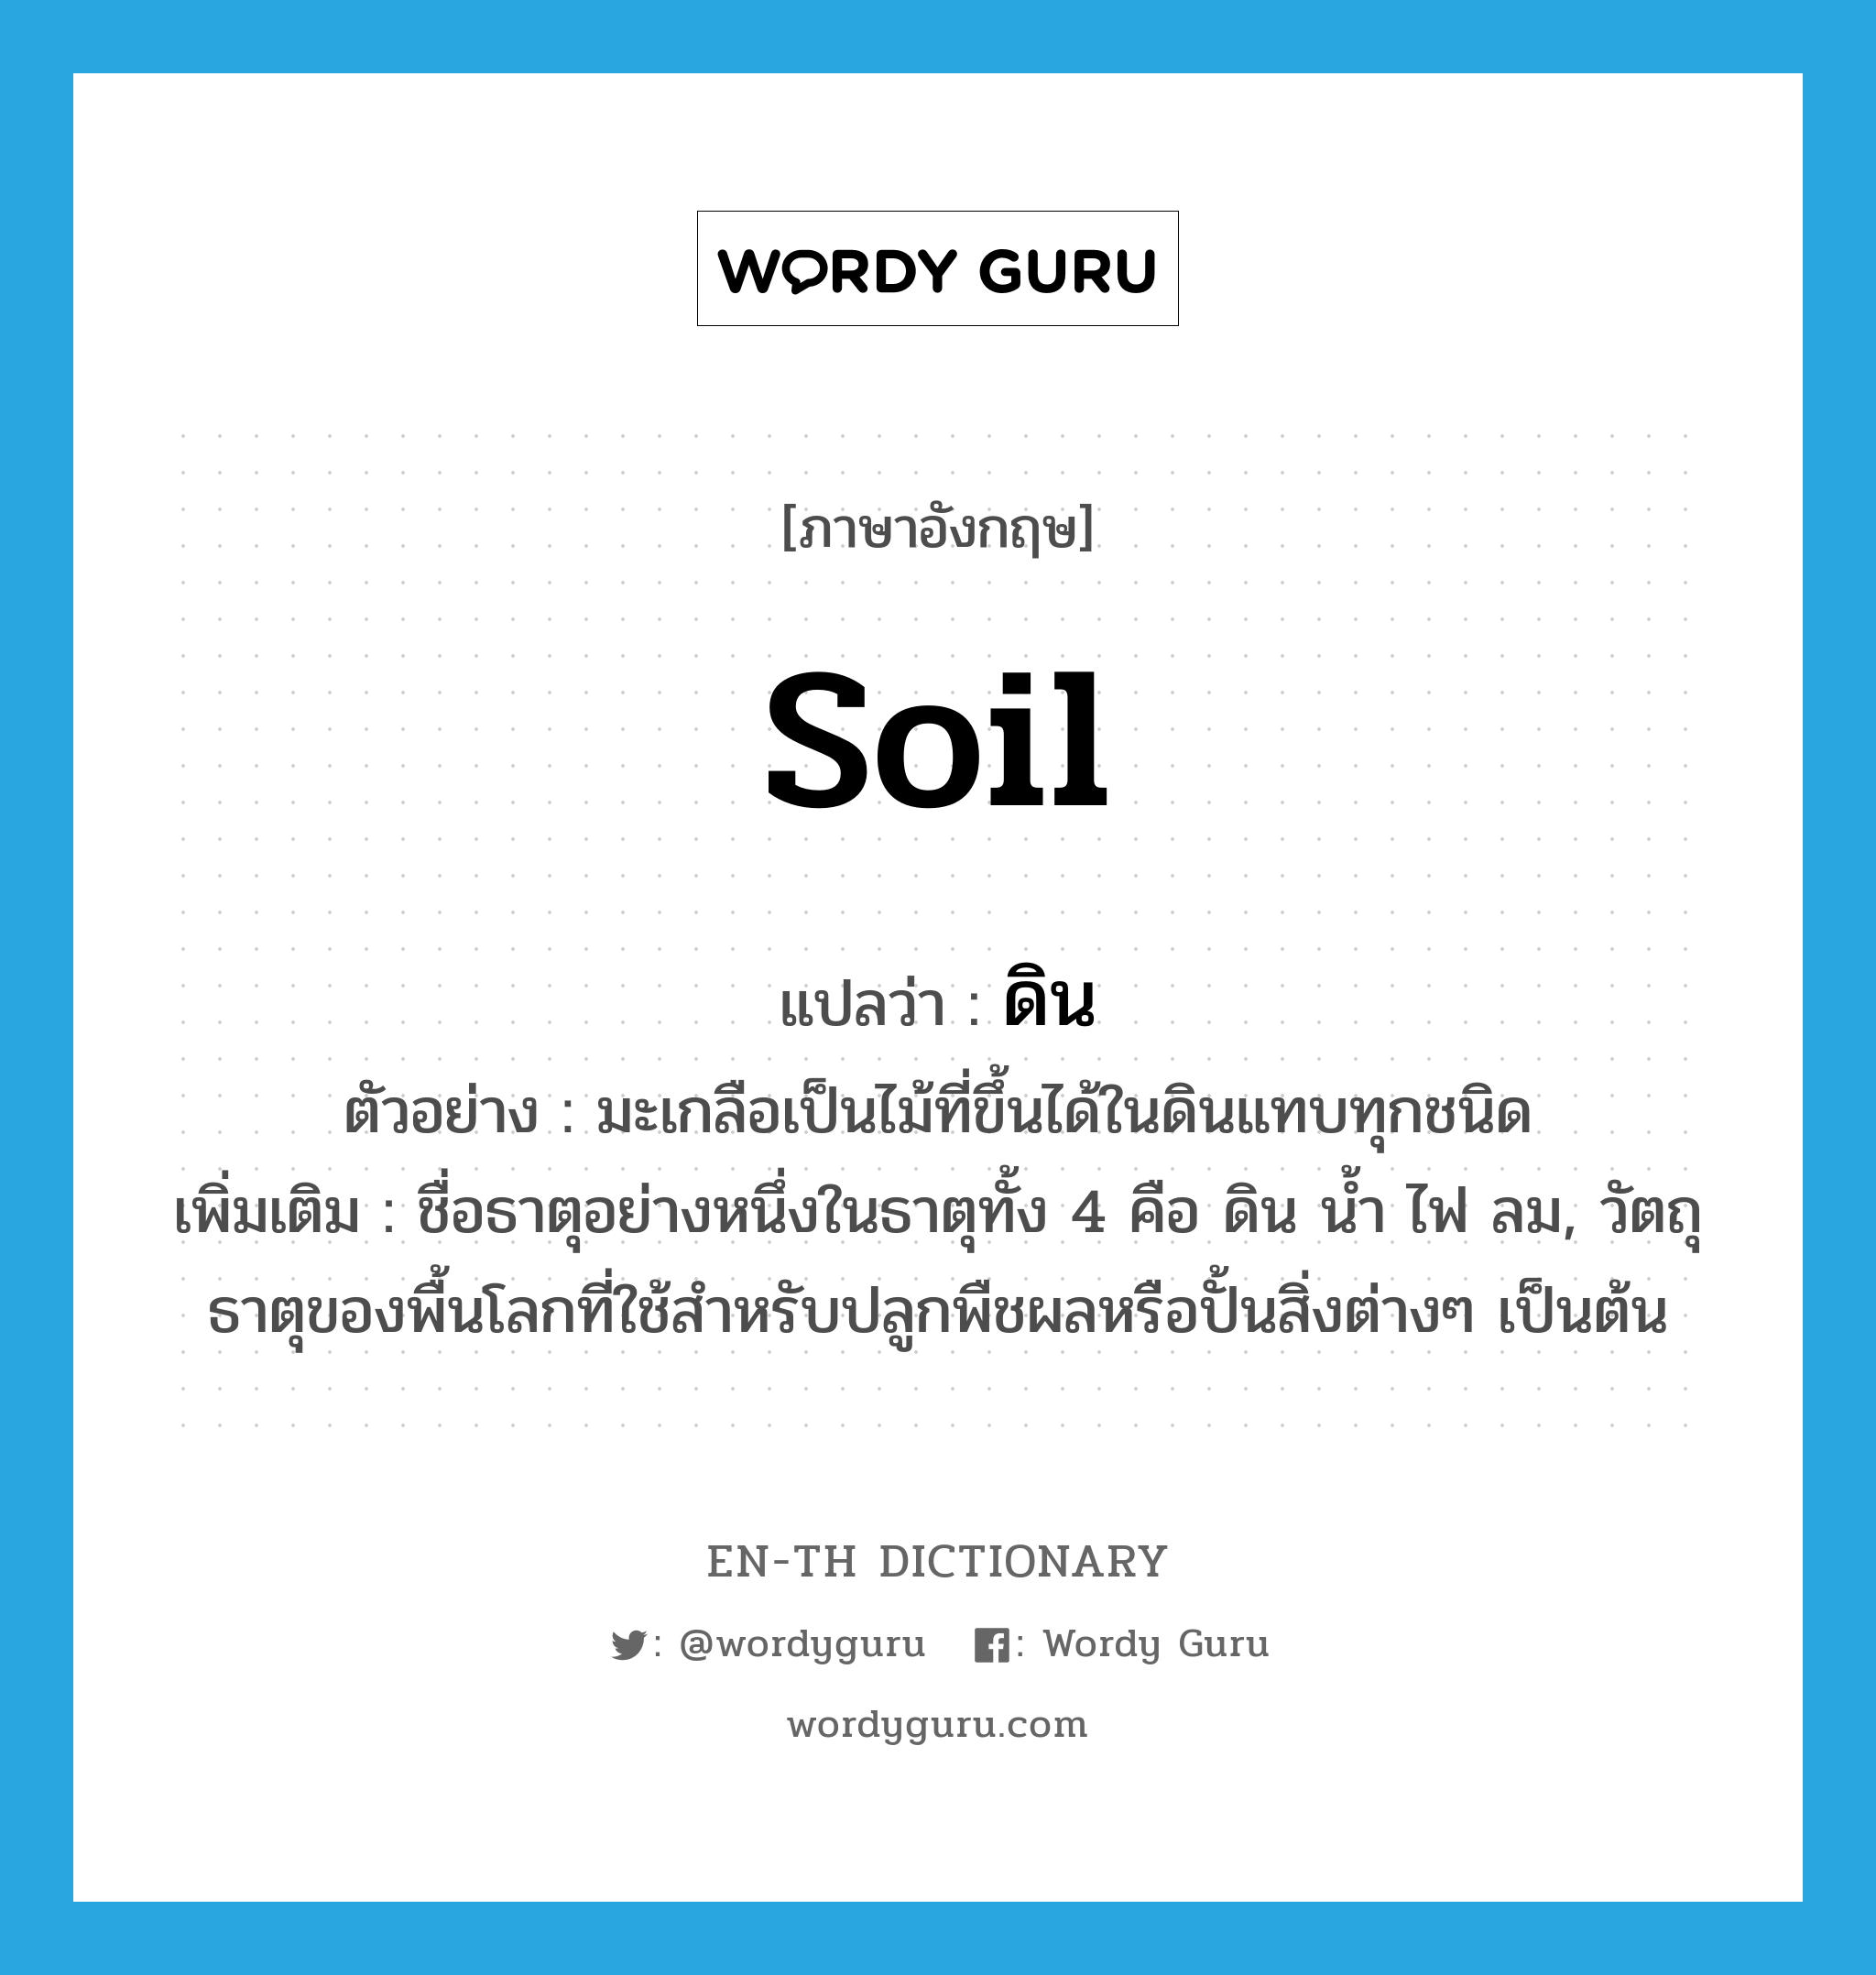 soil แปลว่า?, คำศัพท์ภาษาอังกฤษ soil แปลว่า ดิน ประเภท N ตัวอย่าง มะเกลือเป็นไม้ที่ขึ้นได้ในดินแทบทุกชนิด เพิ่มเติม ชื่อธาตุอย่างหนึ่งในธาตุทั้ง 4 คือ ดิน น้ำ ไฟ ลม, วัตถุธาตุของพื้นโลกที่ใช้สำหรับปลูกพืชผลหรือปั้นสิ่งต่างๆ เป็นต้น หมวด N